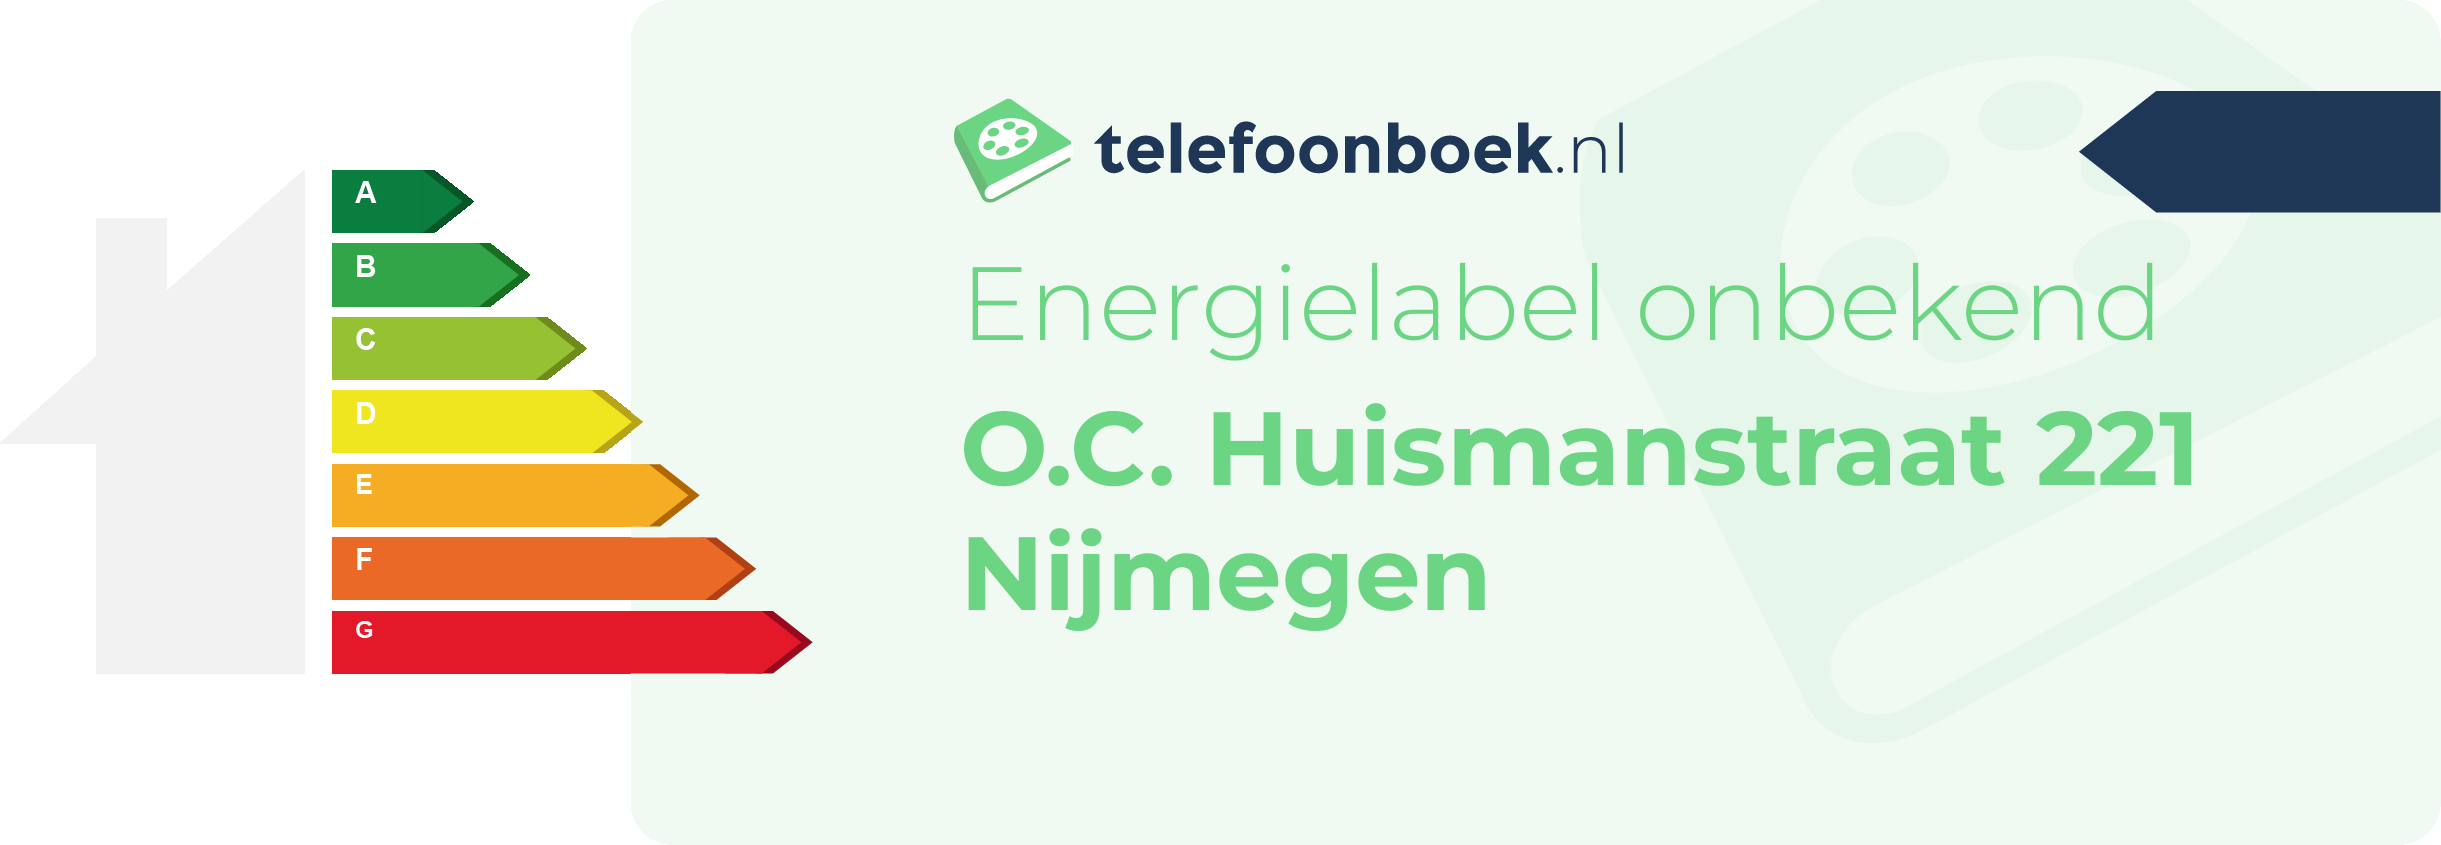 Energielabel O.C. Huismanstraat 221 Nijmegen